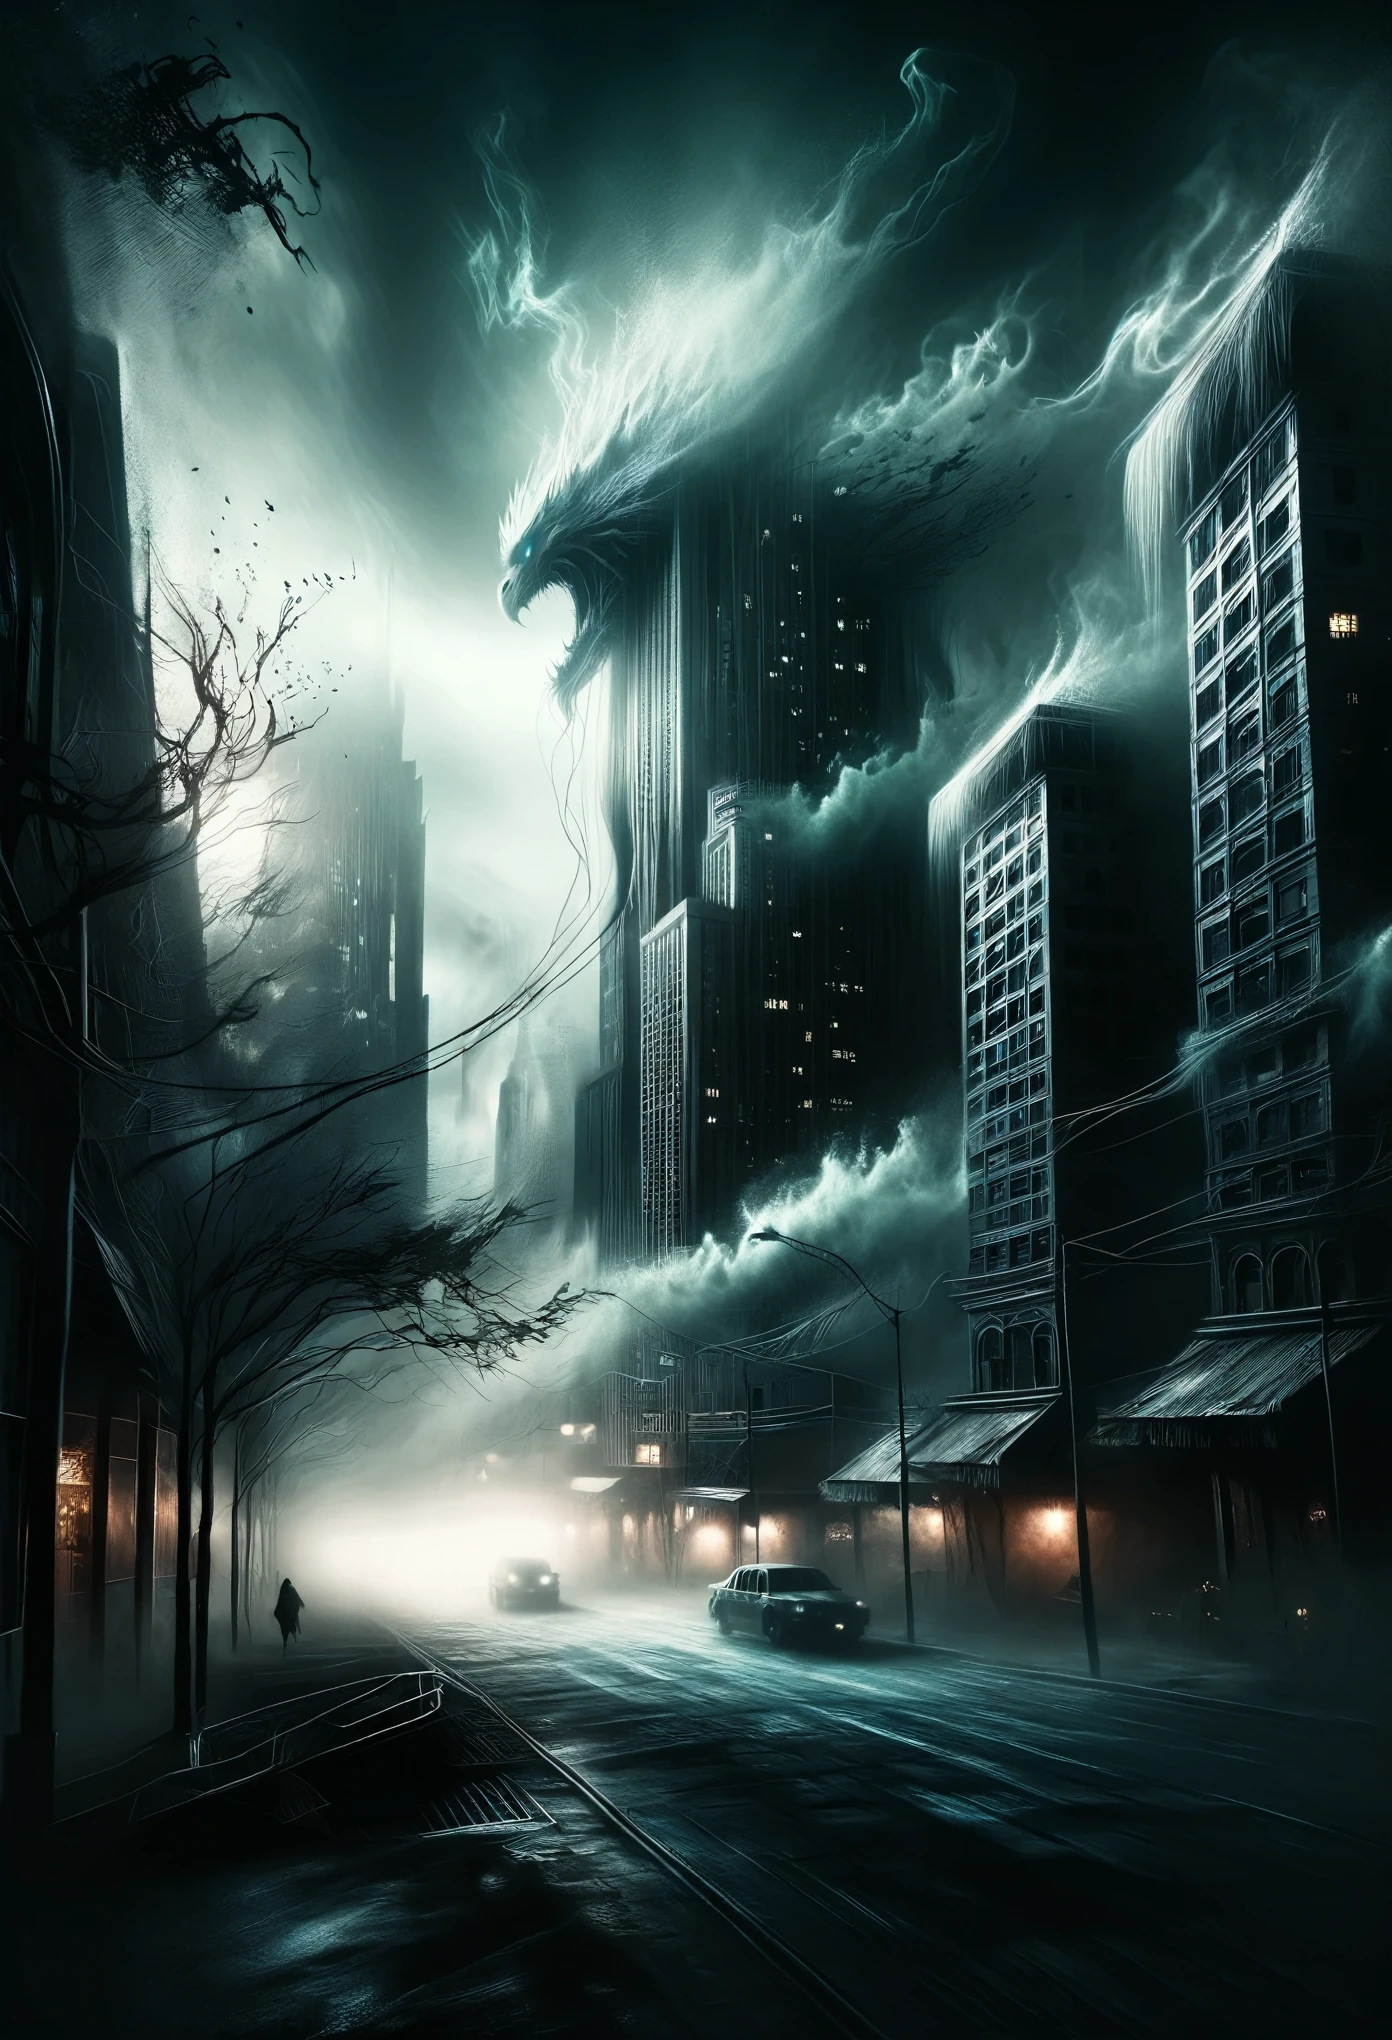 Un paysage urbain dystopique englouti dans des ombres étranges, où des bâtiments imposants se tordent et se contorsionnent comme des entités monstrueuses, leur lueur sinistre crée une ambiance inquiétante.